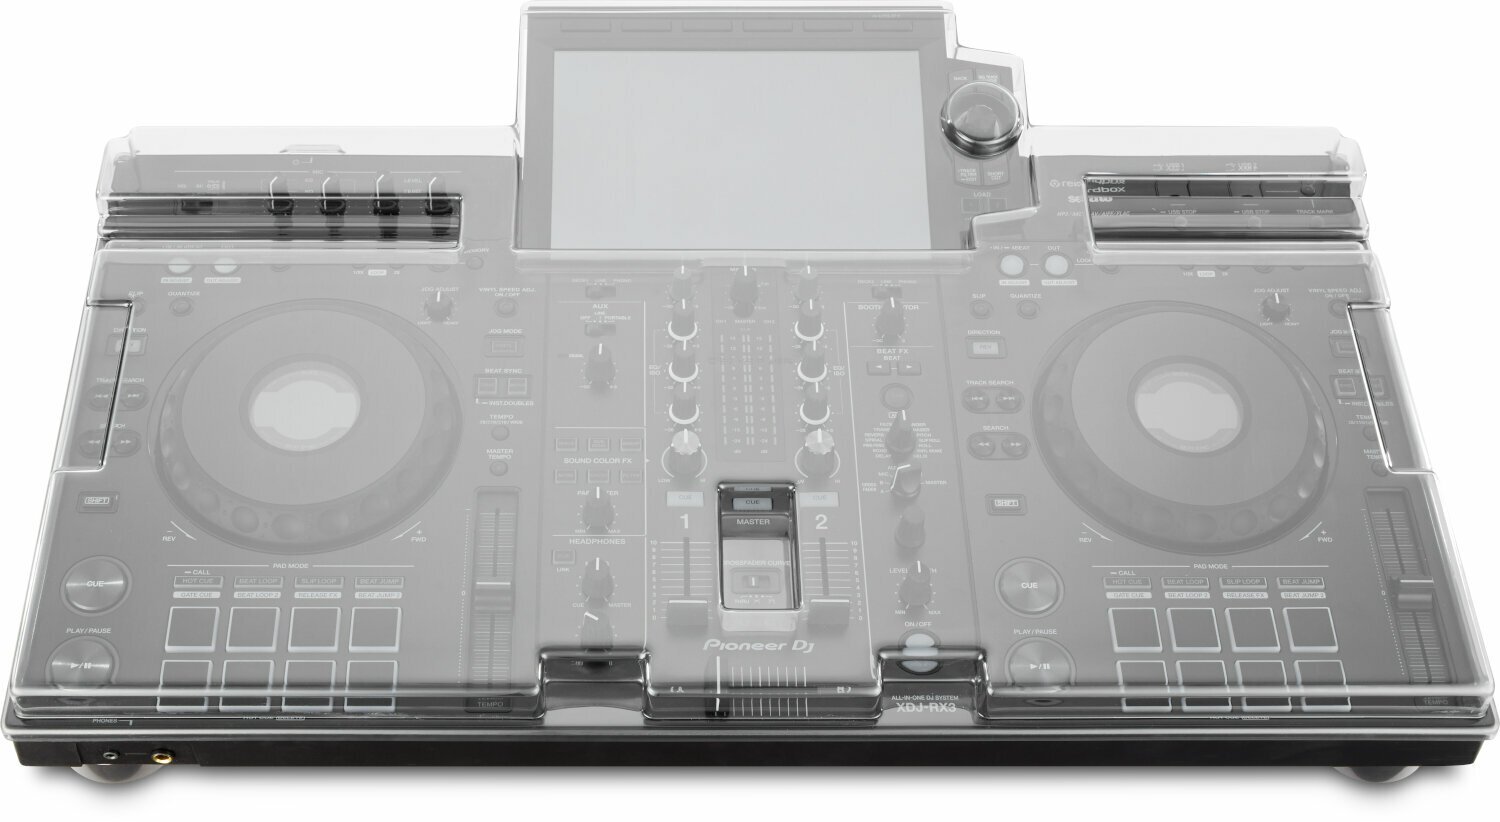 Pokrywa ochronna na kontroler DJ Decksaver Pioneer DJ XDJ-RX3